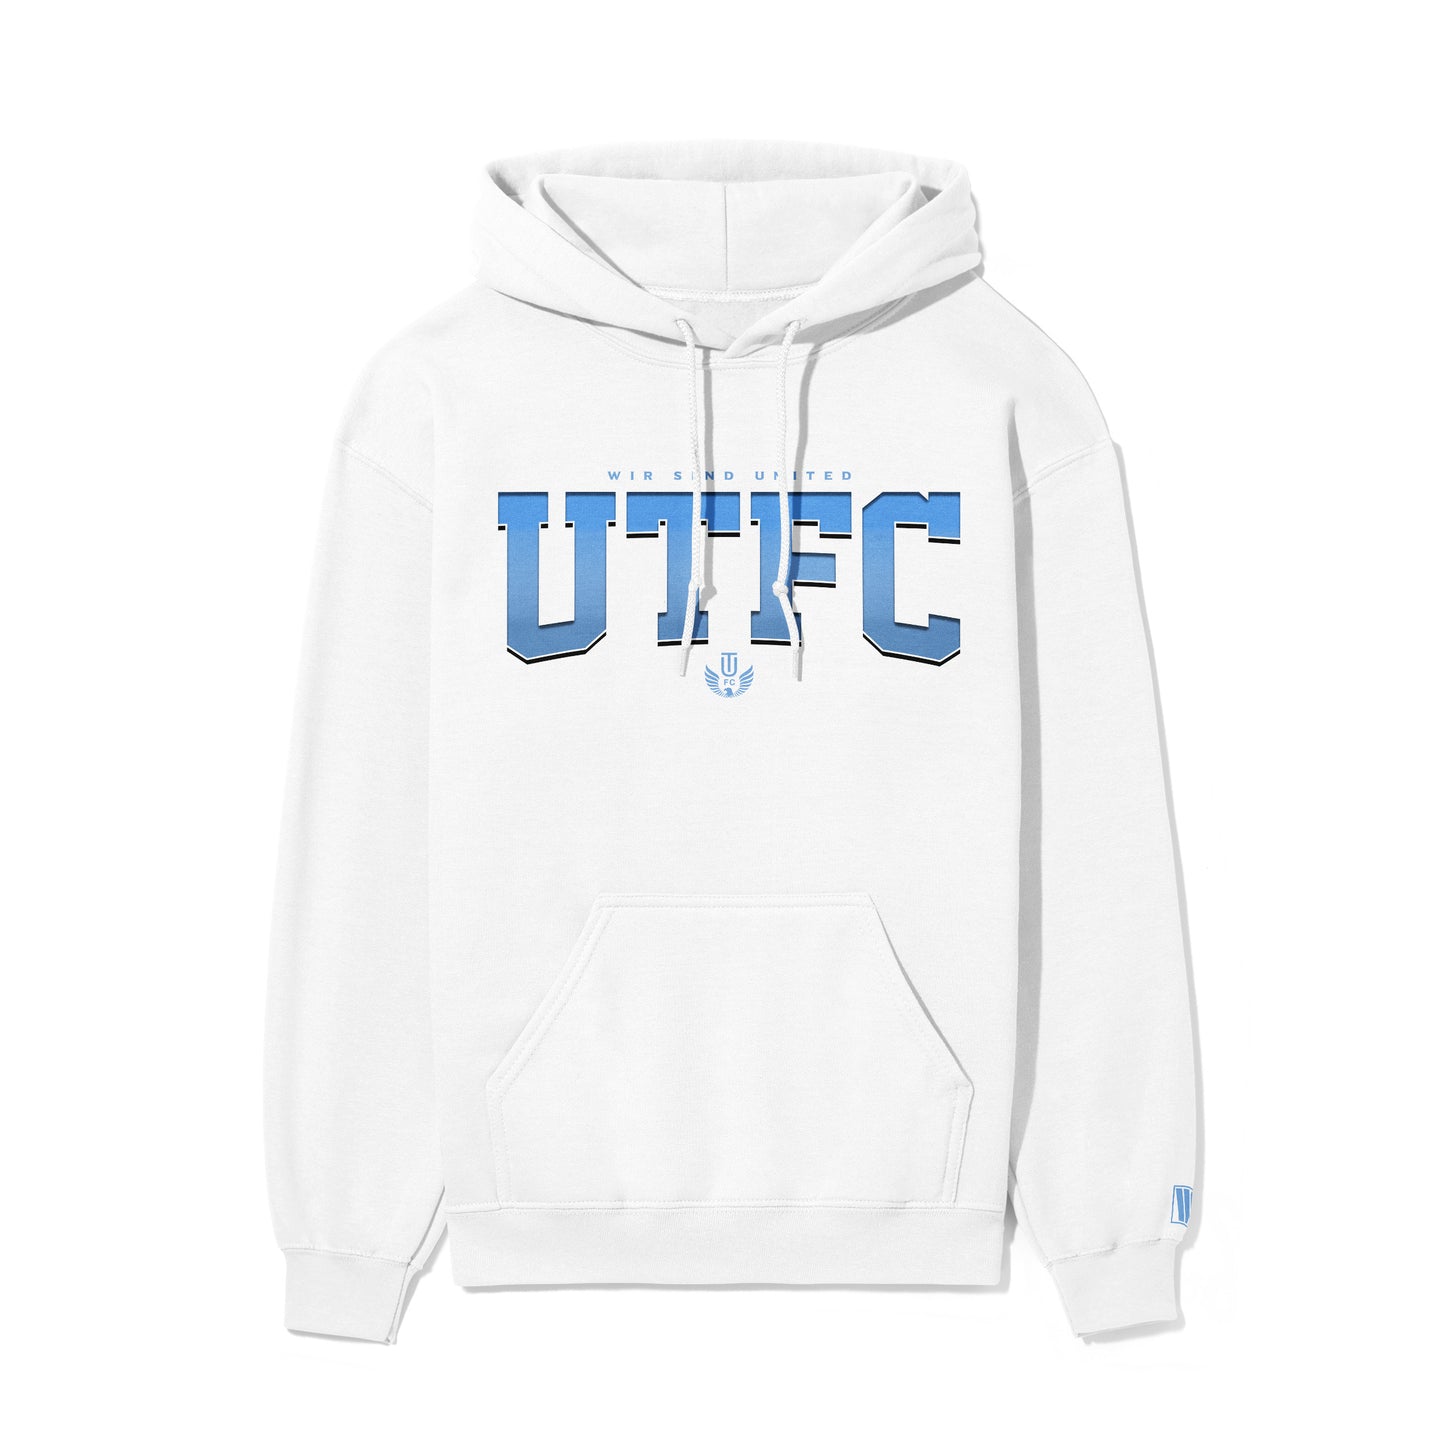 UTFC Varsity Hoodie